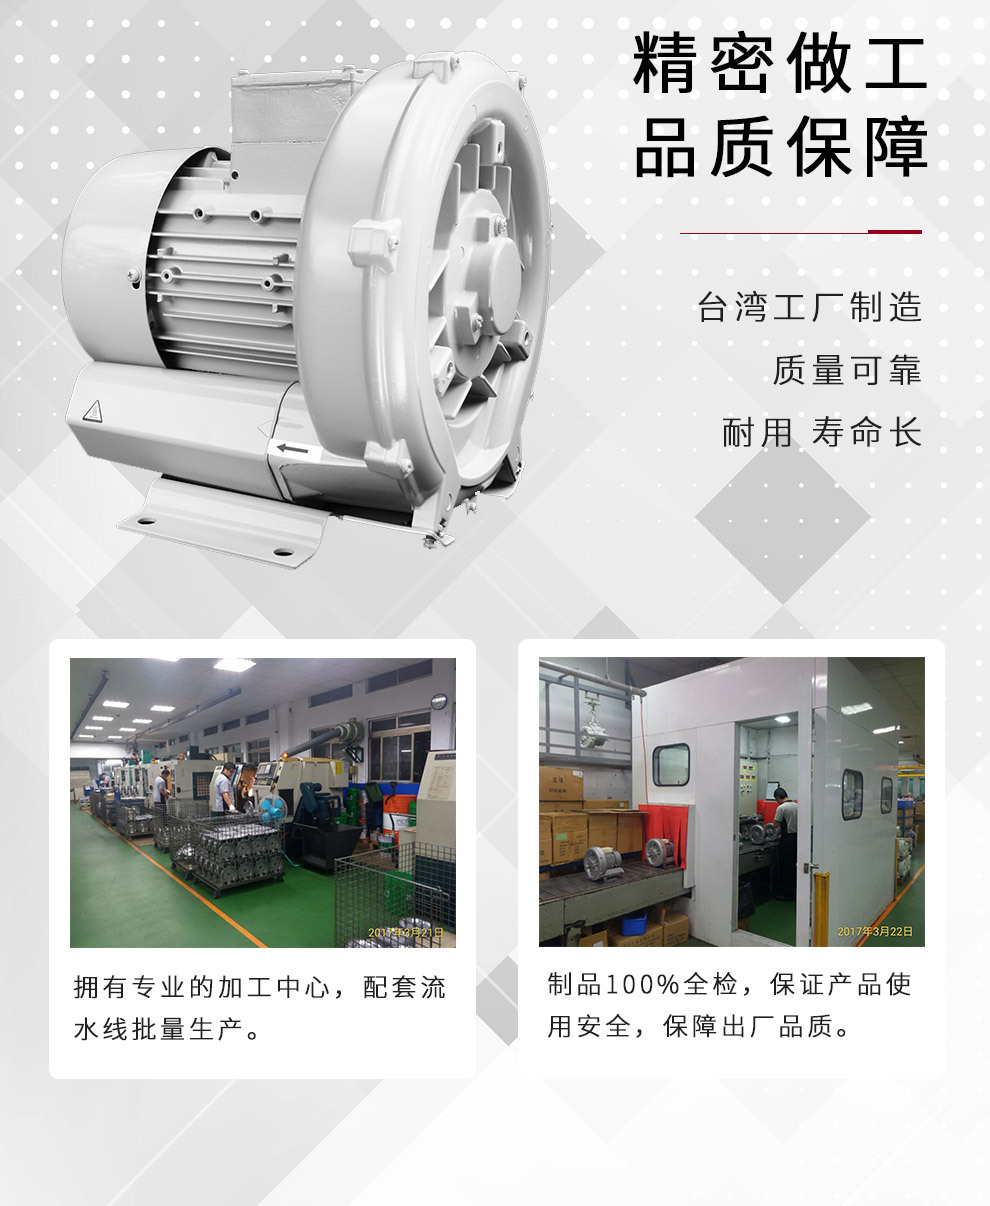 台湾Ho Hsing低噪音工业鼓风机 耐磨高压鼓风机 全铝高压鼓风机RB60-520示例图3